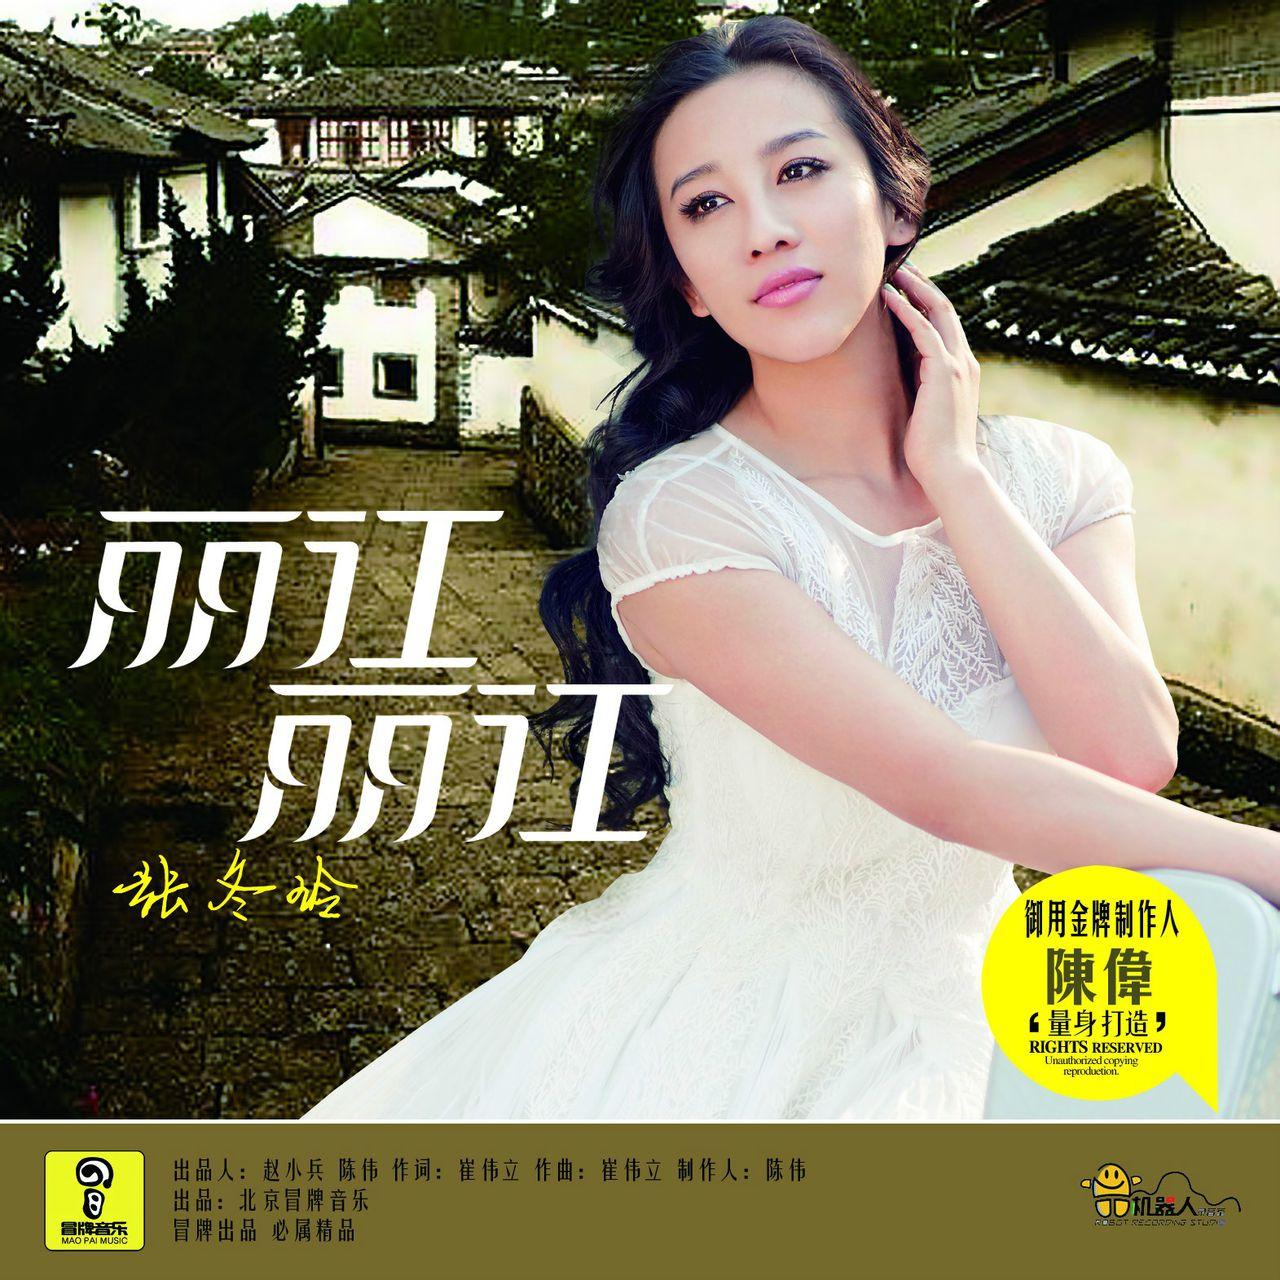 歌曲《丽江 丽江》是由歌手张冬玲2014年推出的一首新歌